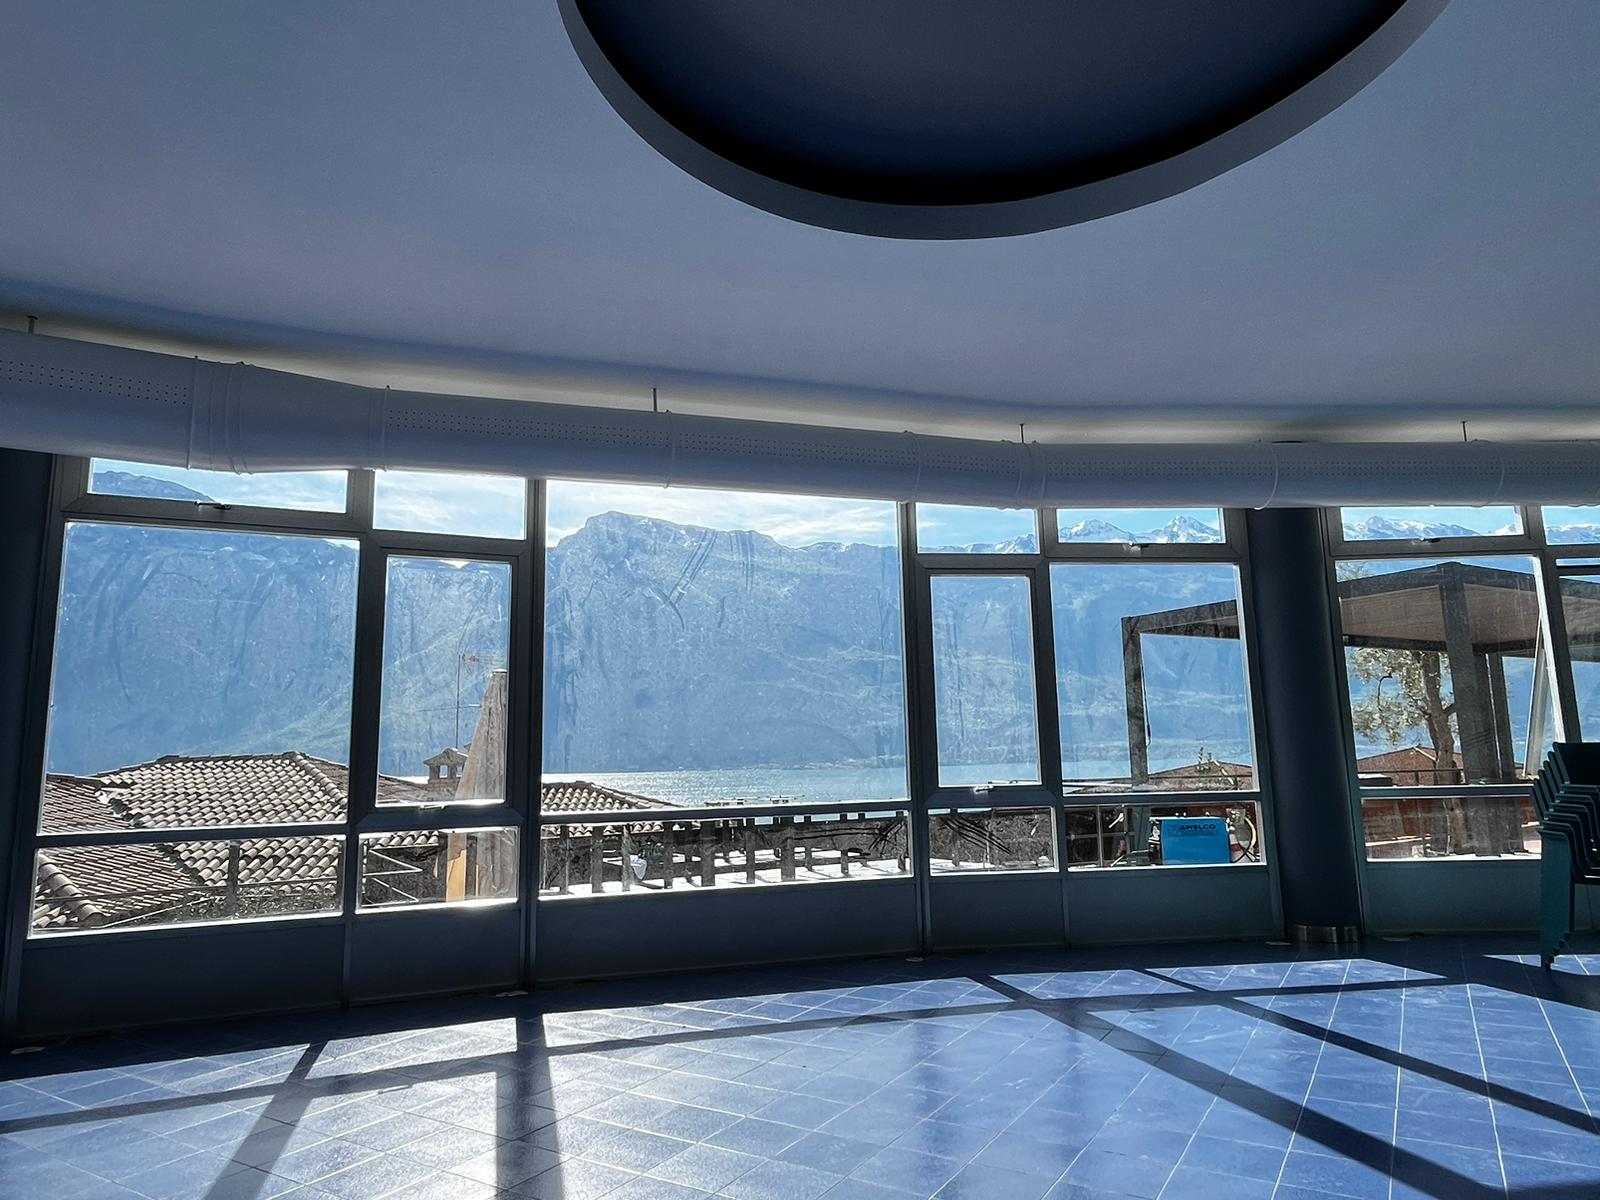 Impianto condizionamento realizzato con tubazione microforata ad effetto induttivo presso hotel sul lago di Garda 3